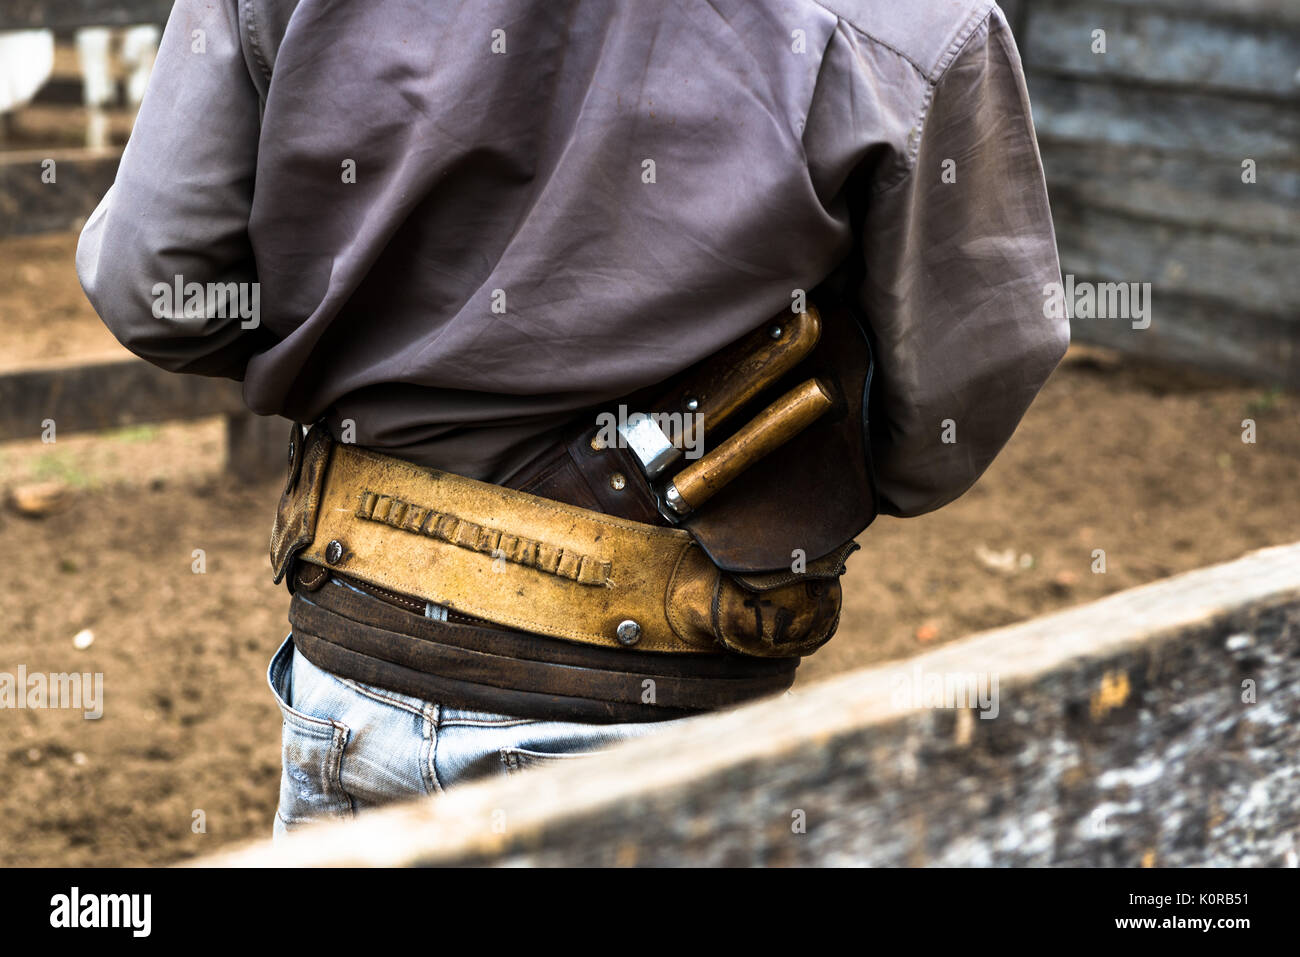 Detalle de un cinturón del vaquero y la cuchilla en el Pantanal. Foto de stock